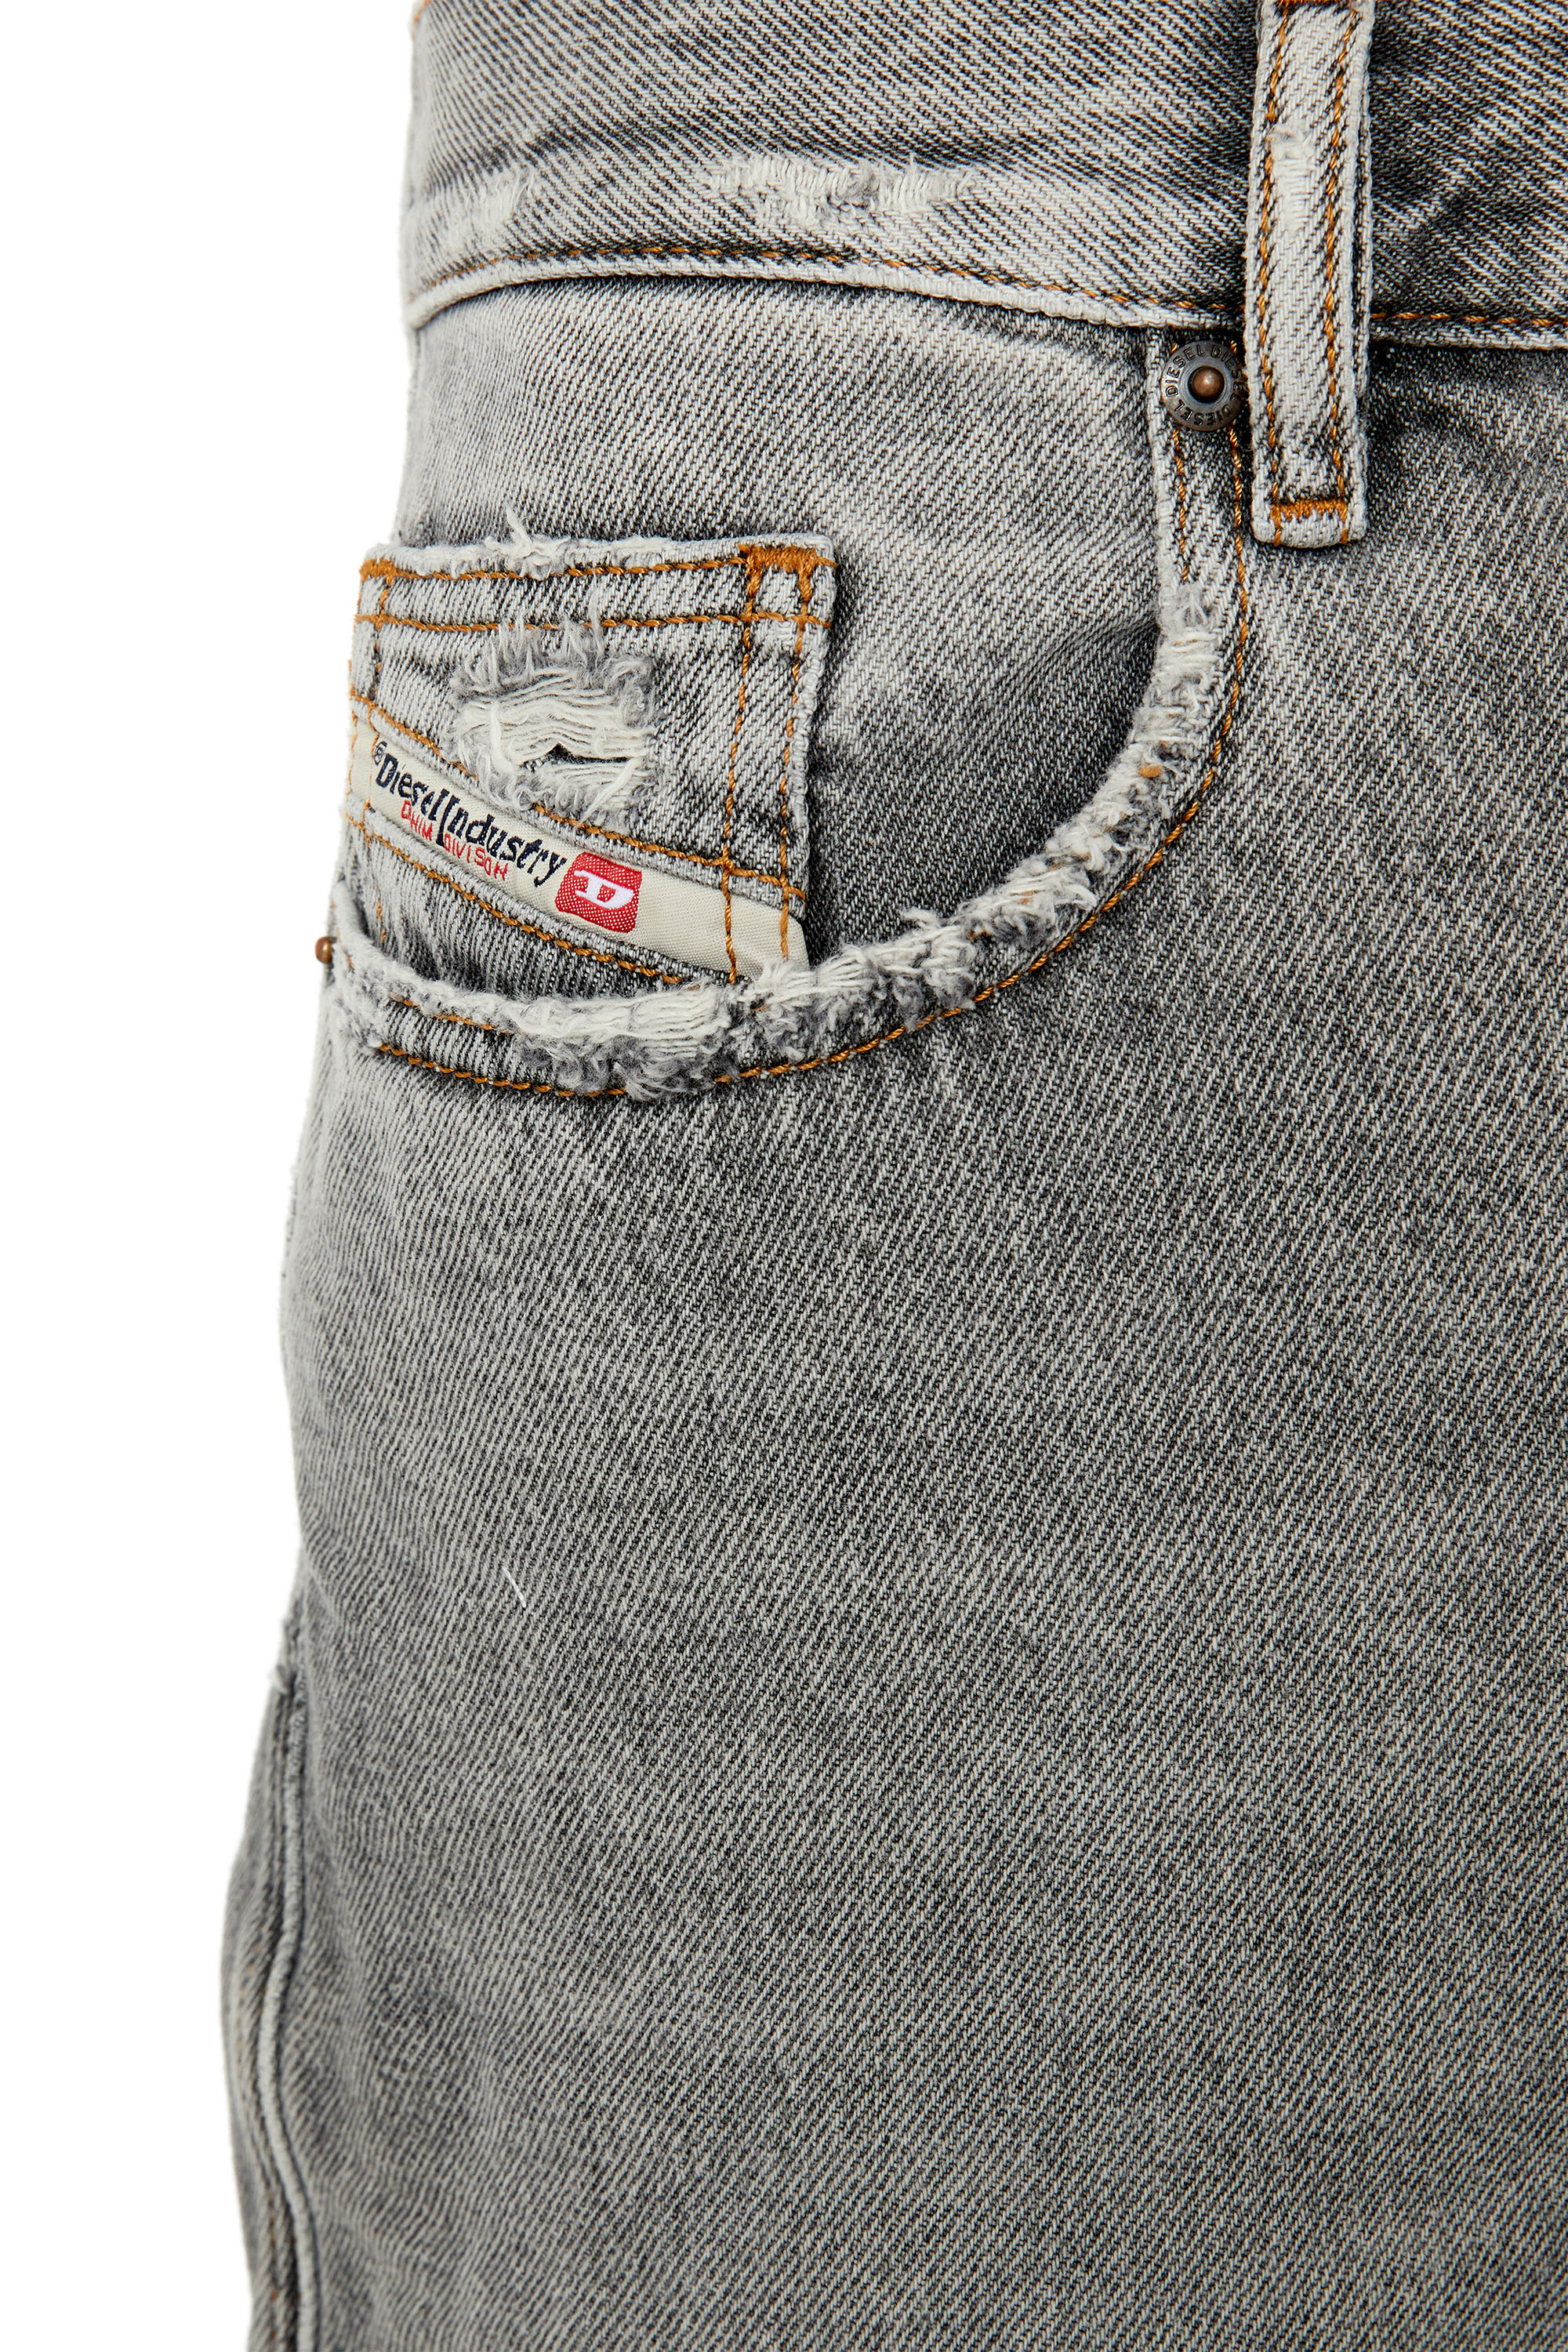 Diesel - Straight Jeans 2020 D-Viker E9B84,  - Image 5